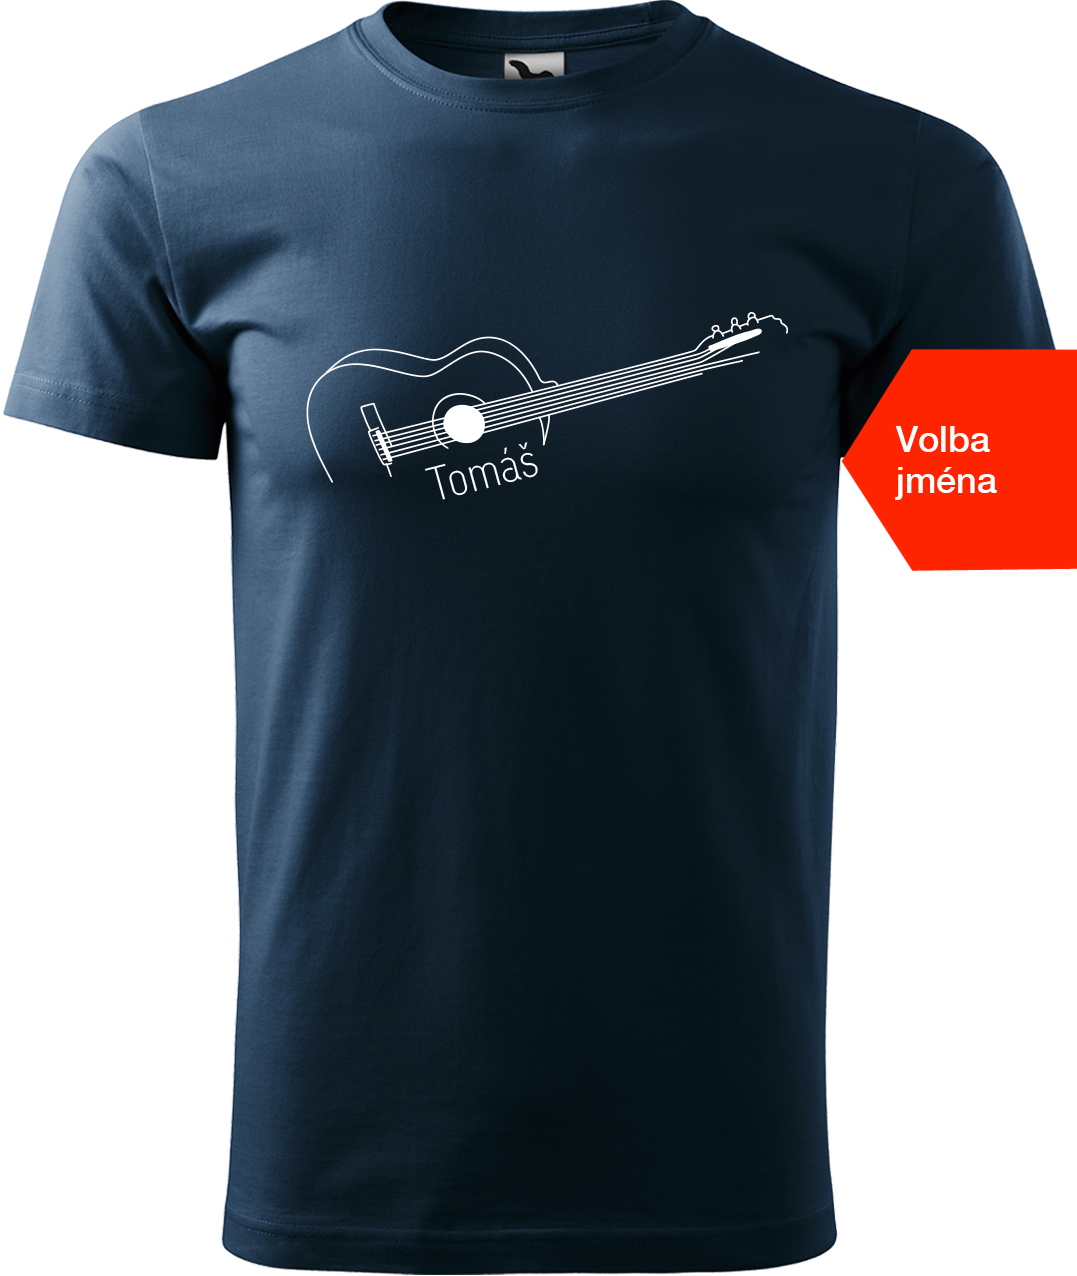 Pánské tričko s kytarou se jménem - Stylizovaná kytara Velikost: XL, Barva: Námořní modrá (02), Střih: pánský